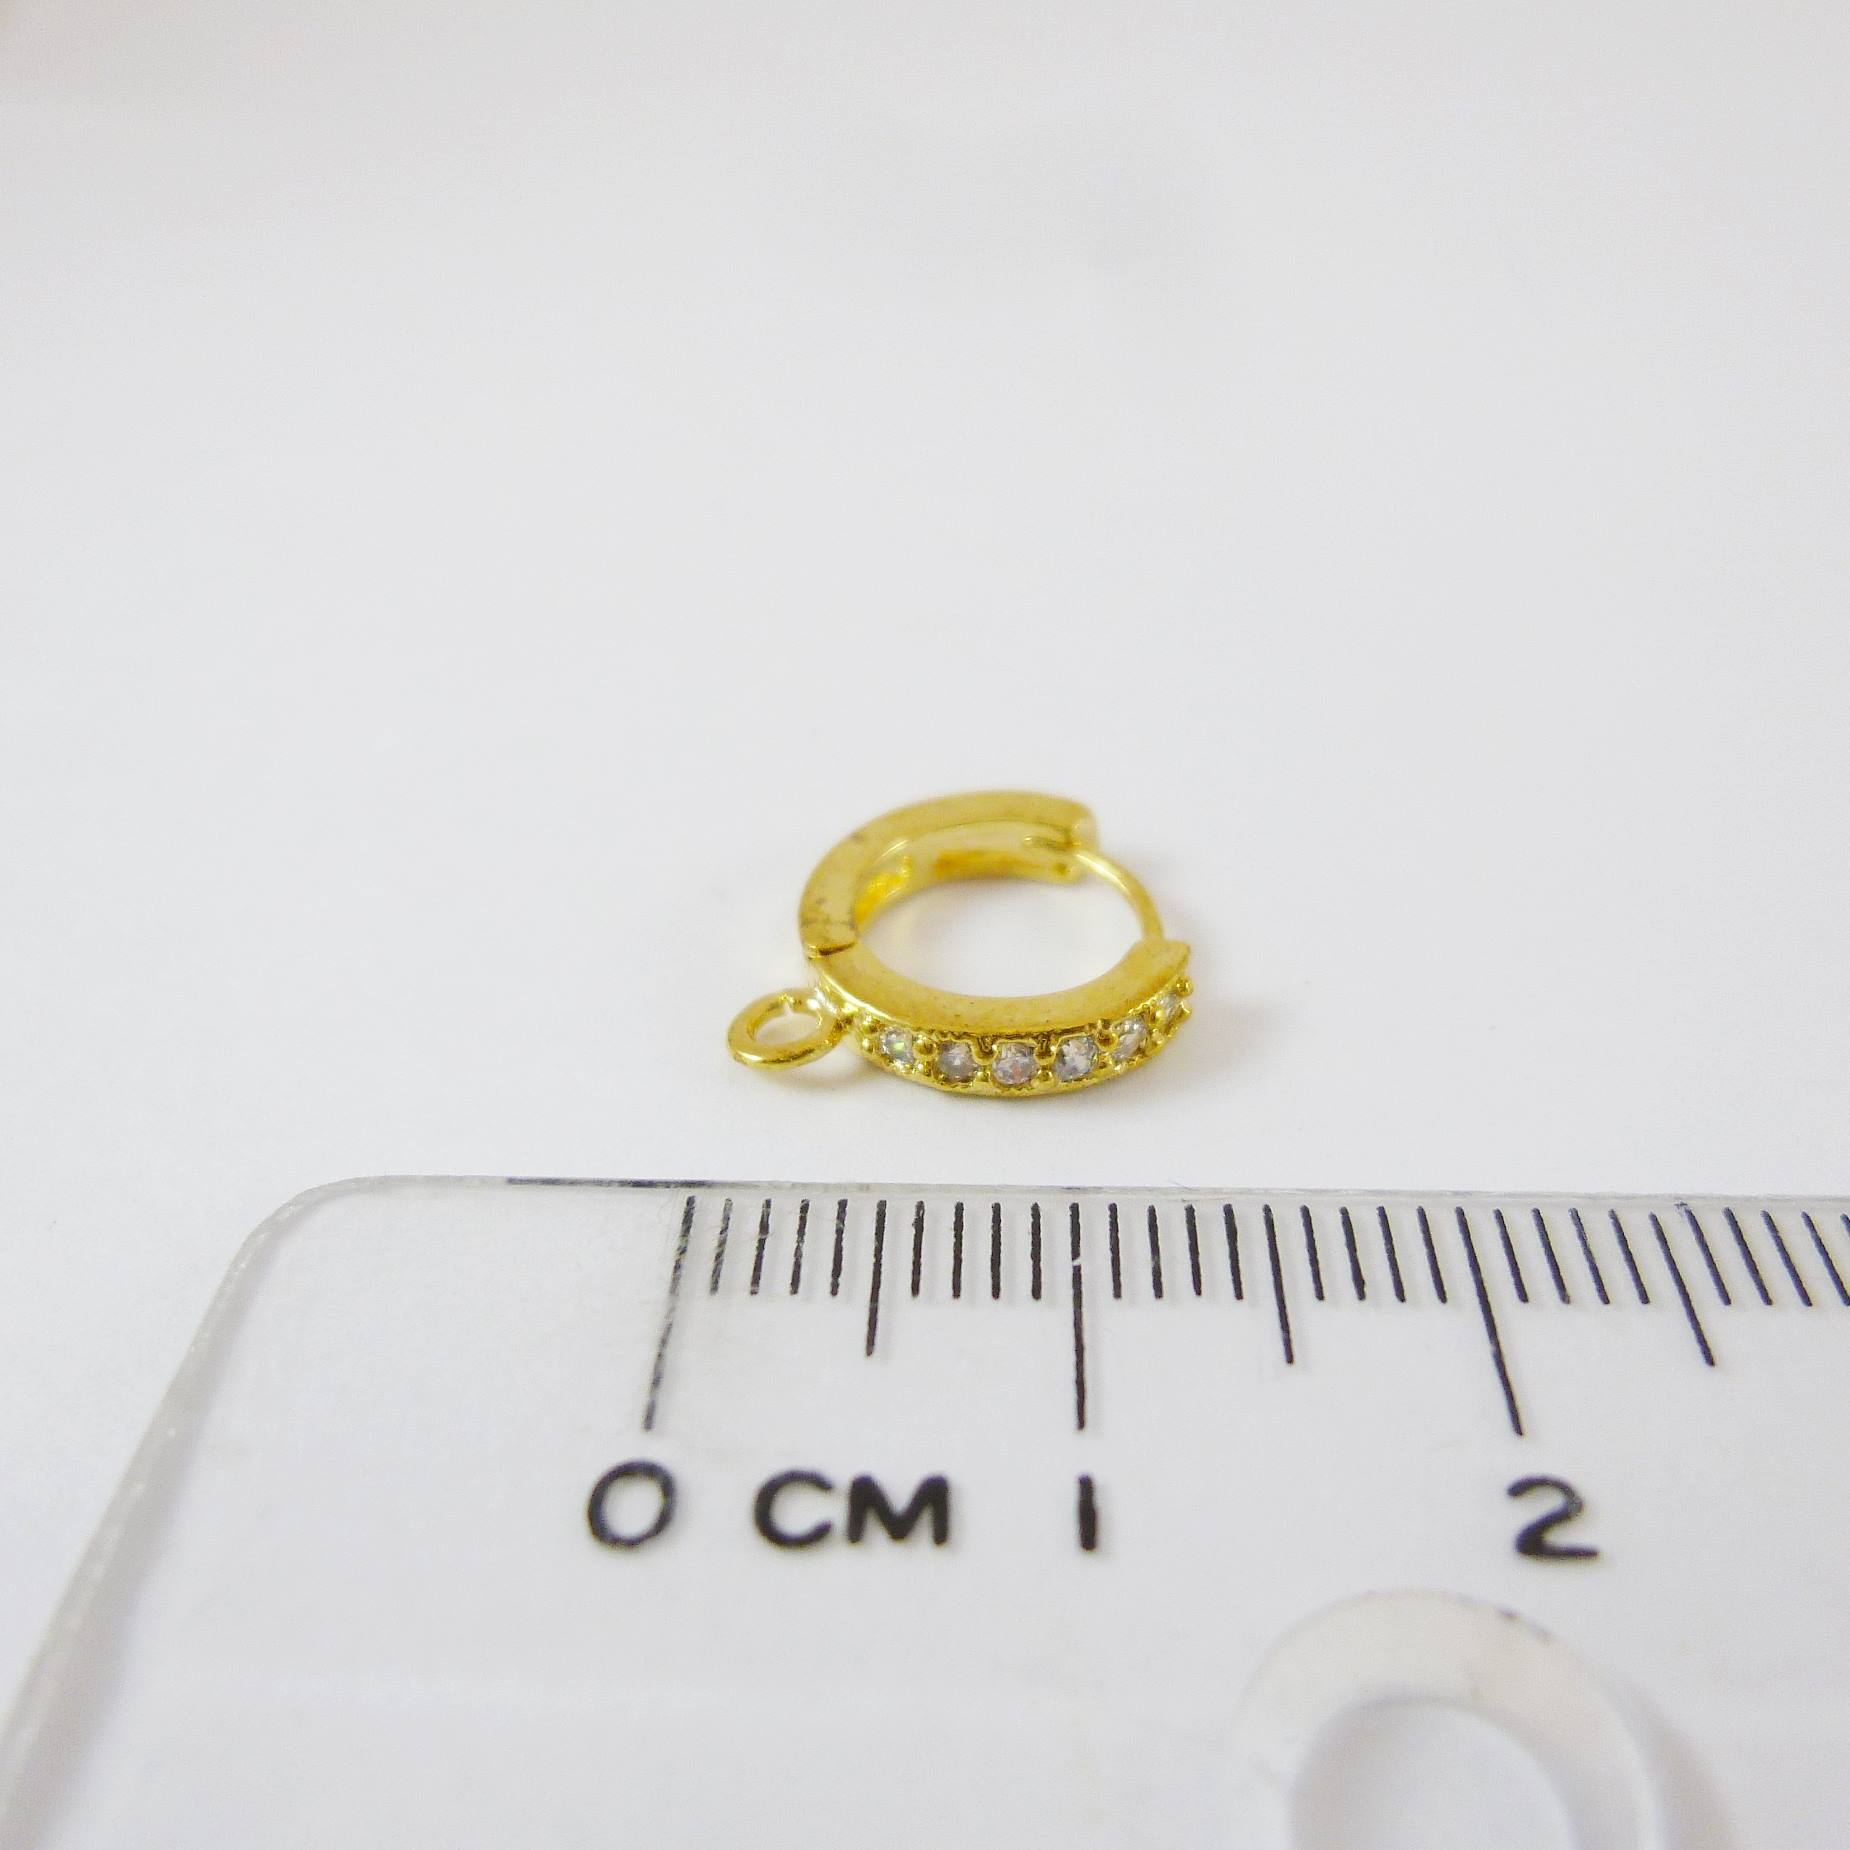 銅鍍金色圓形鑲鑽耳環